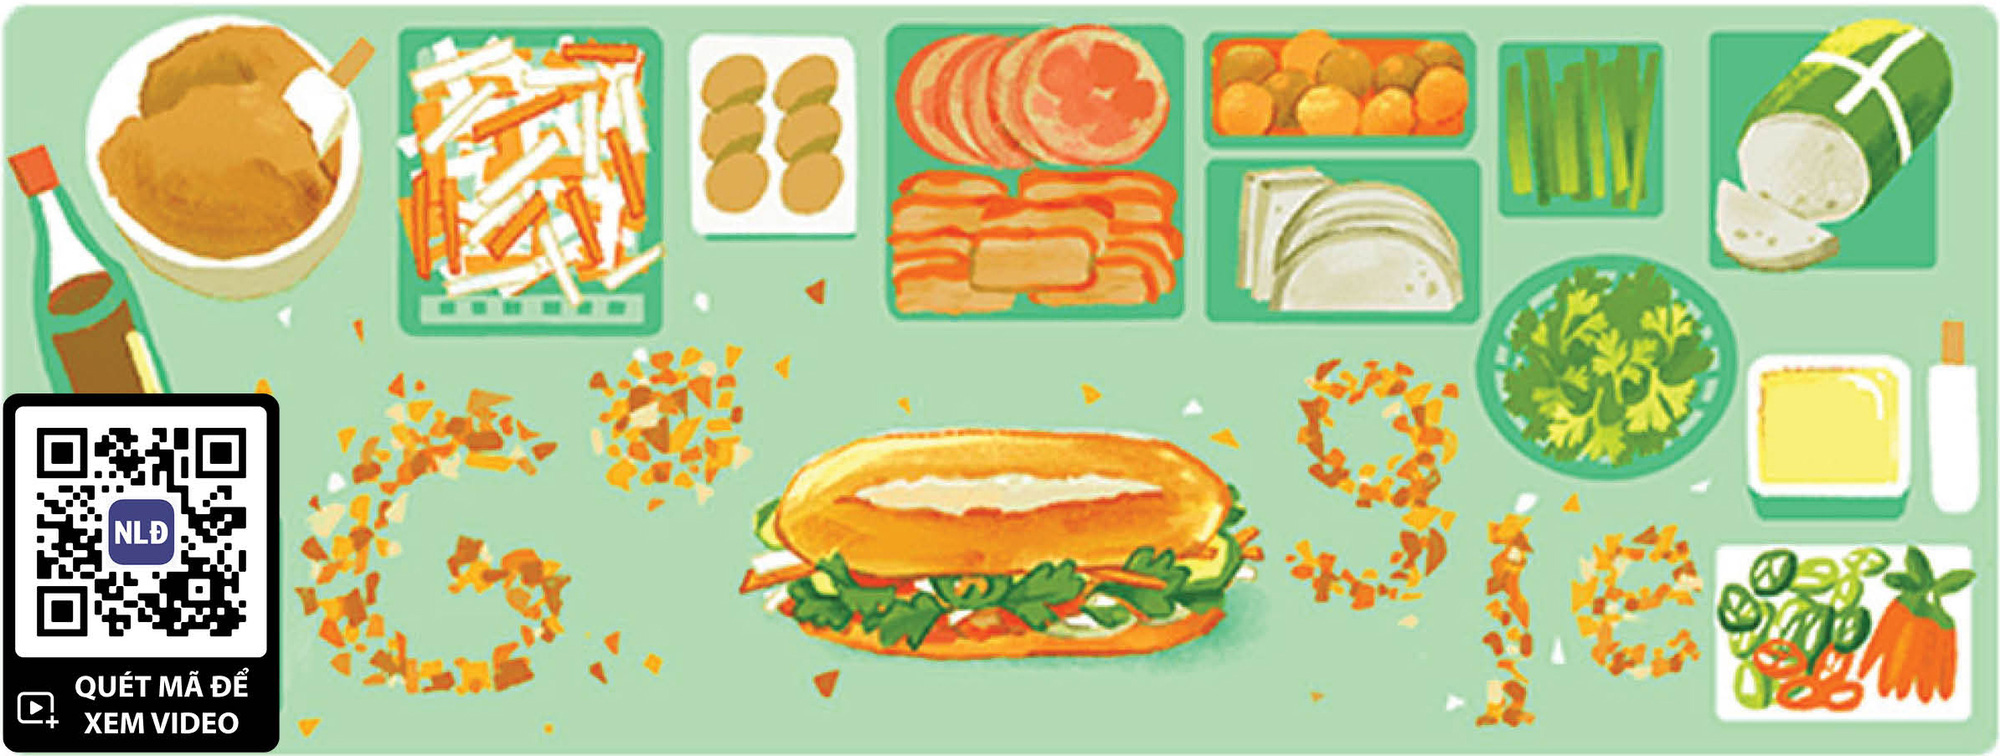 Tôn vinh bánh mì và văn hóa ẩm thực Việt - Báo Người lao động